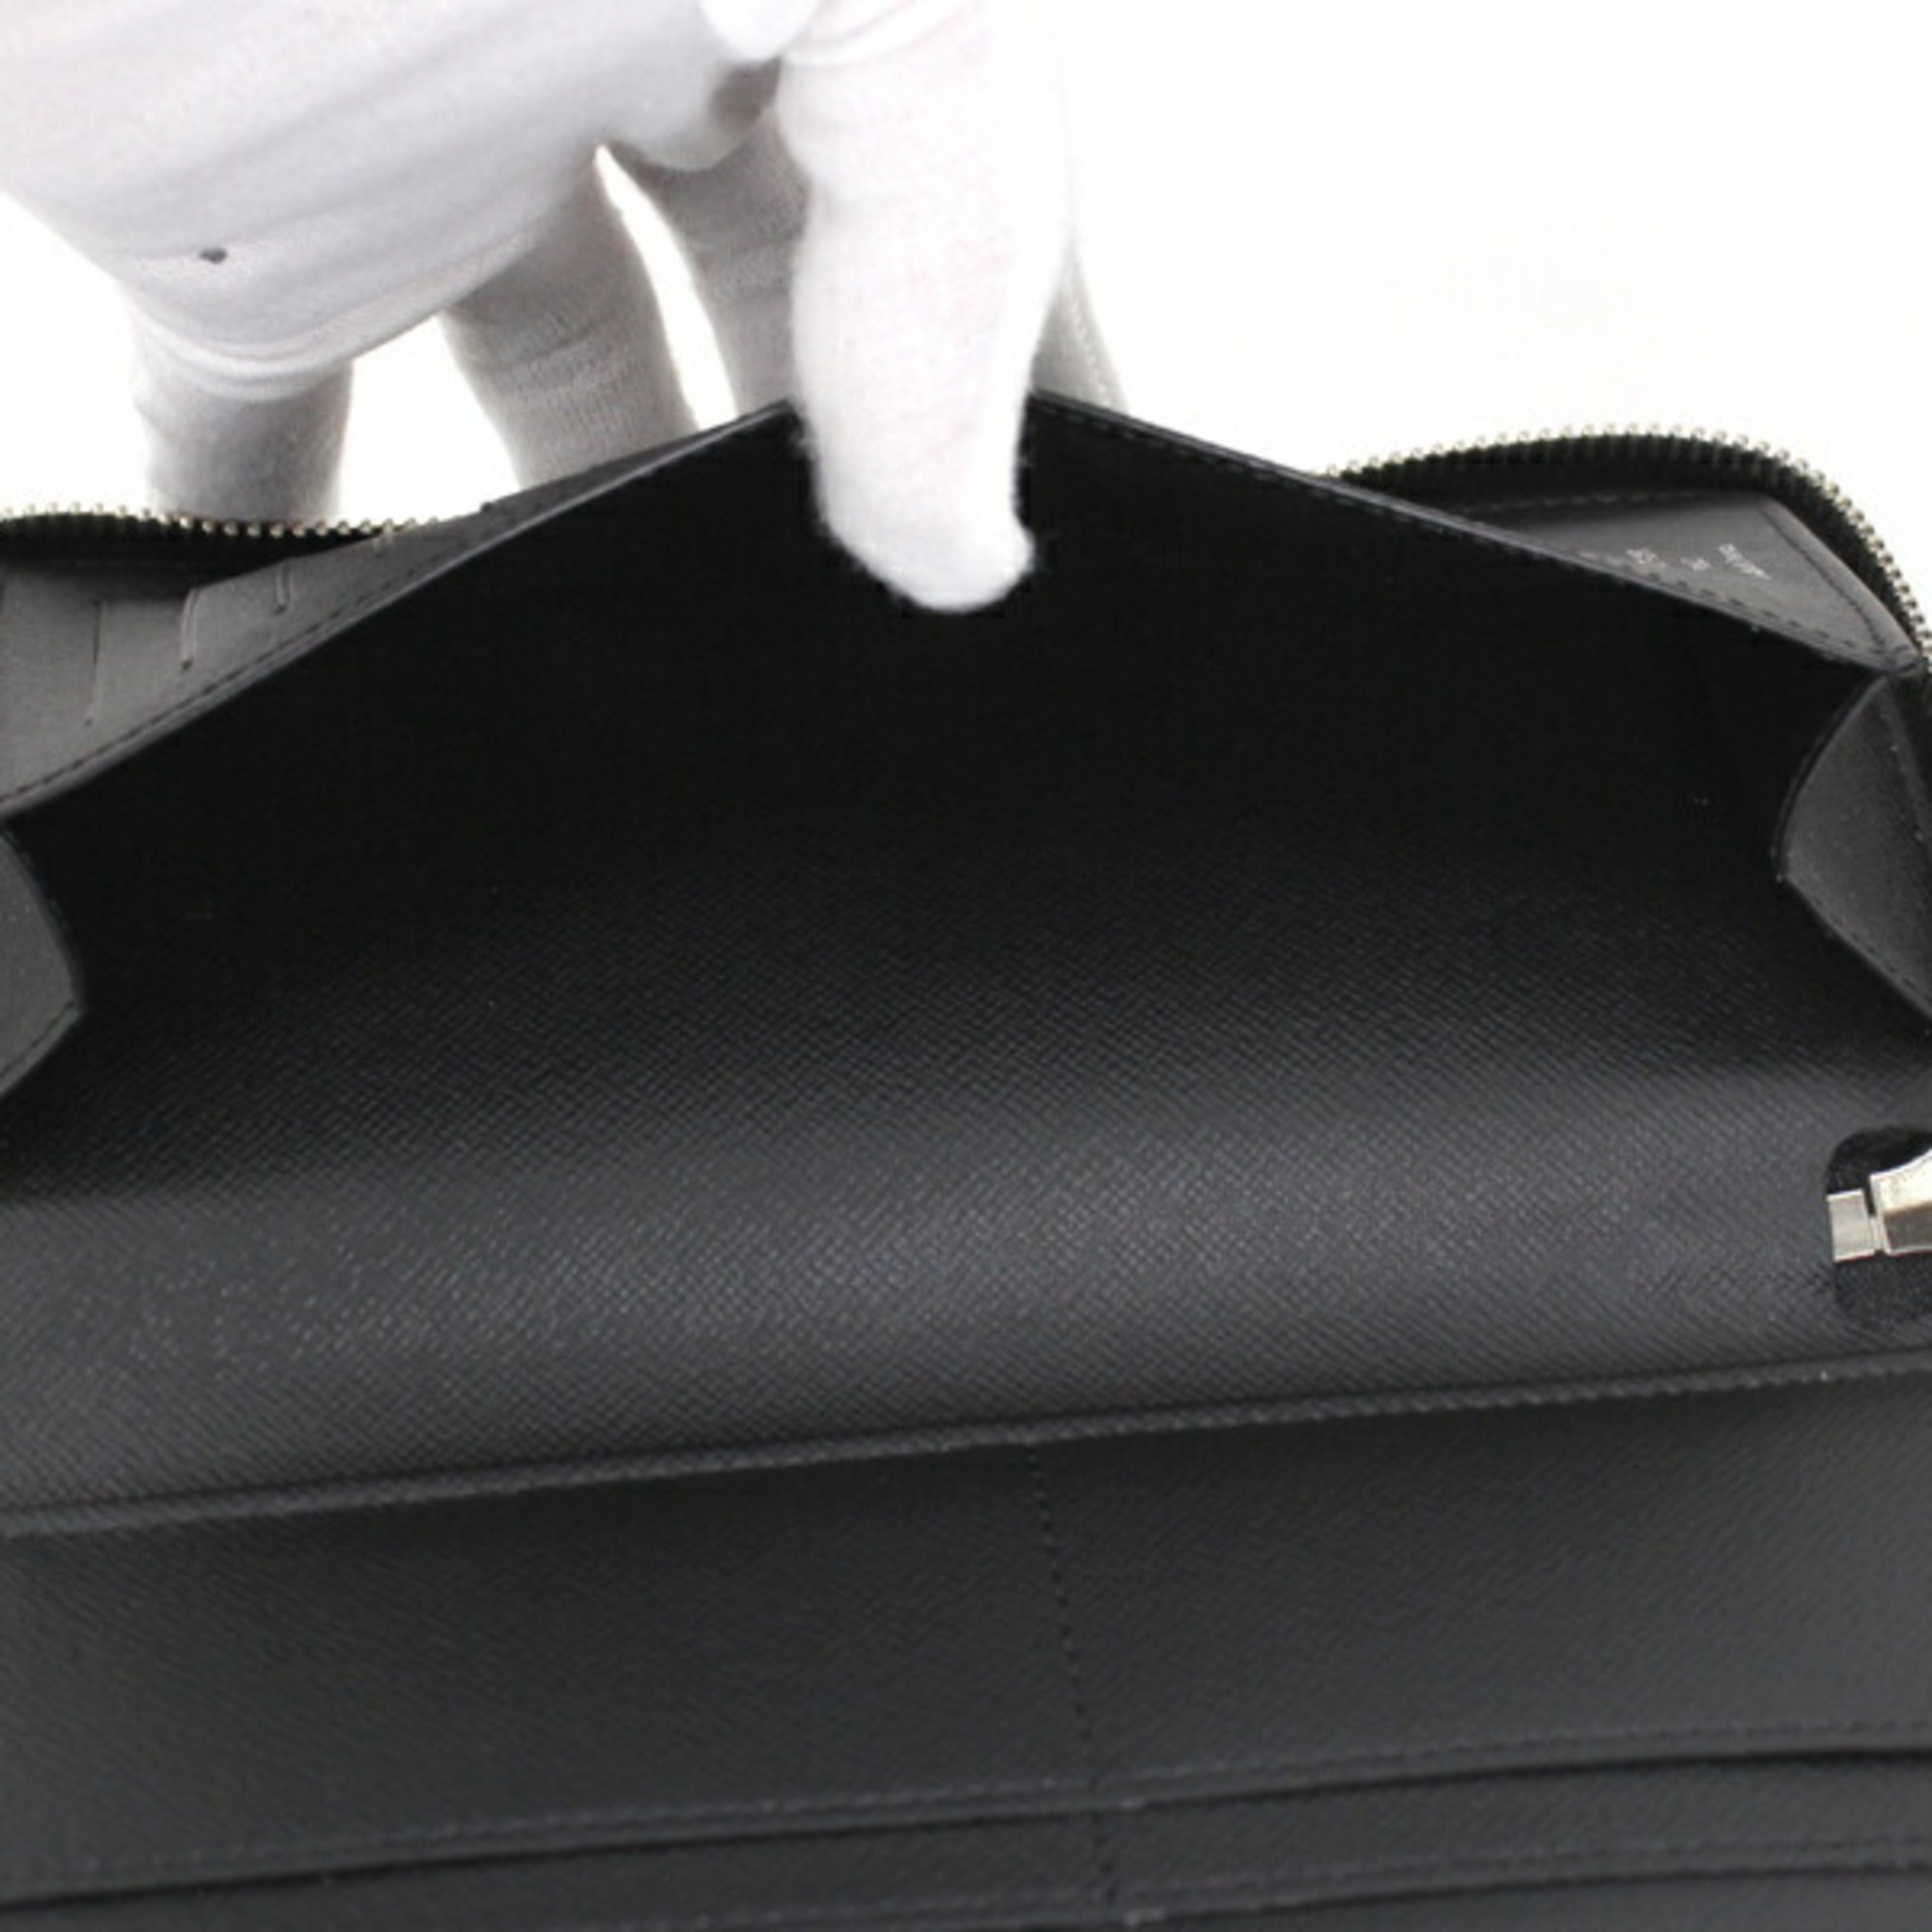 Louis Vuitton Long Wallet Round Taiga Leather Black Zipper Vertical M30503 Men's Zip LOUIS VUITTON KM2655-y